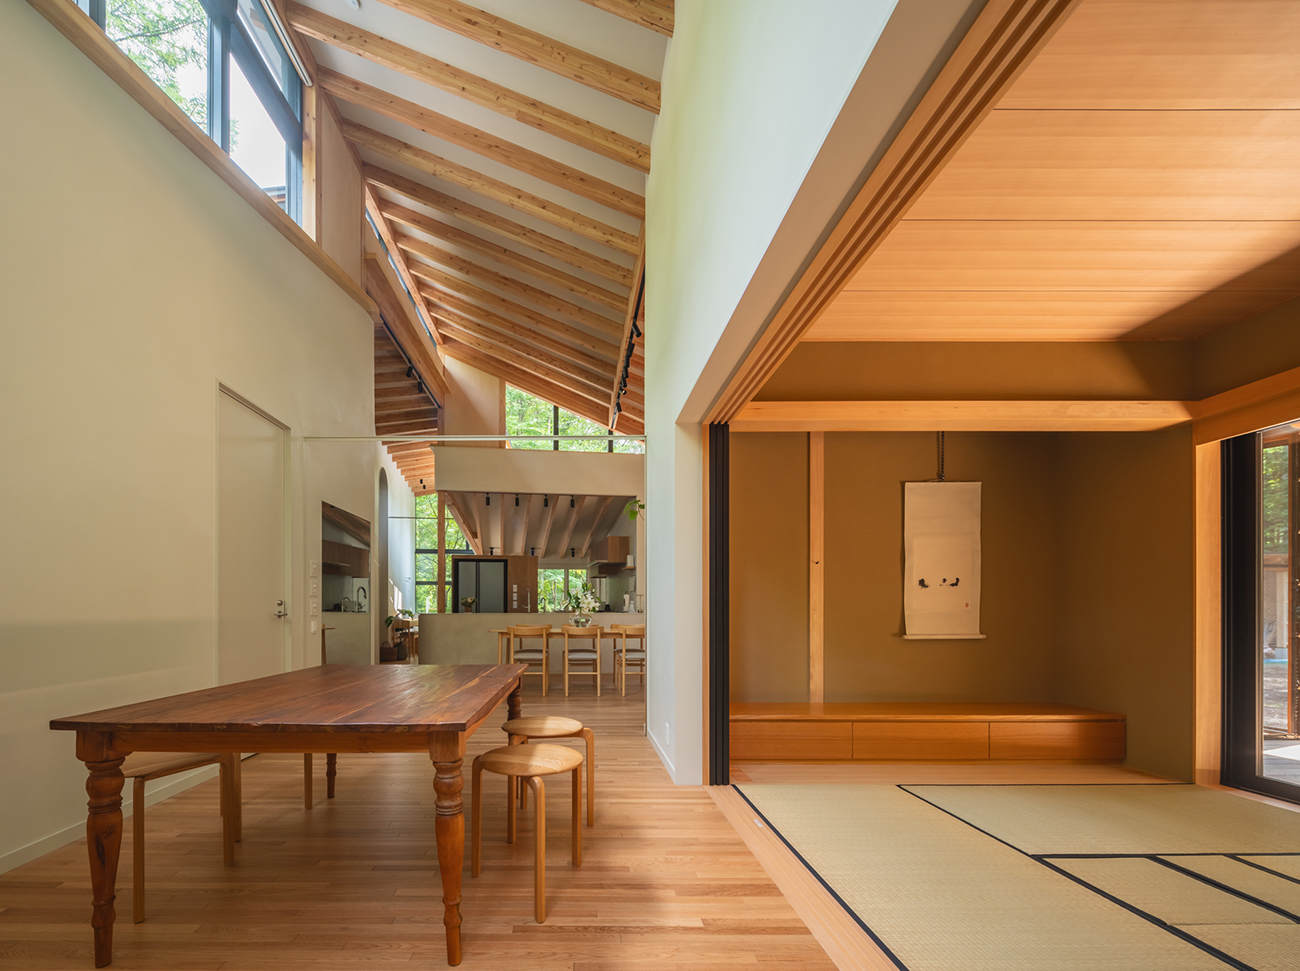 アトリエと和室は茶道の教室として、間仕切りによって居住空間から独立して使うことができる。